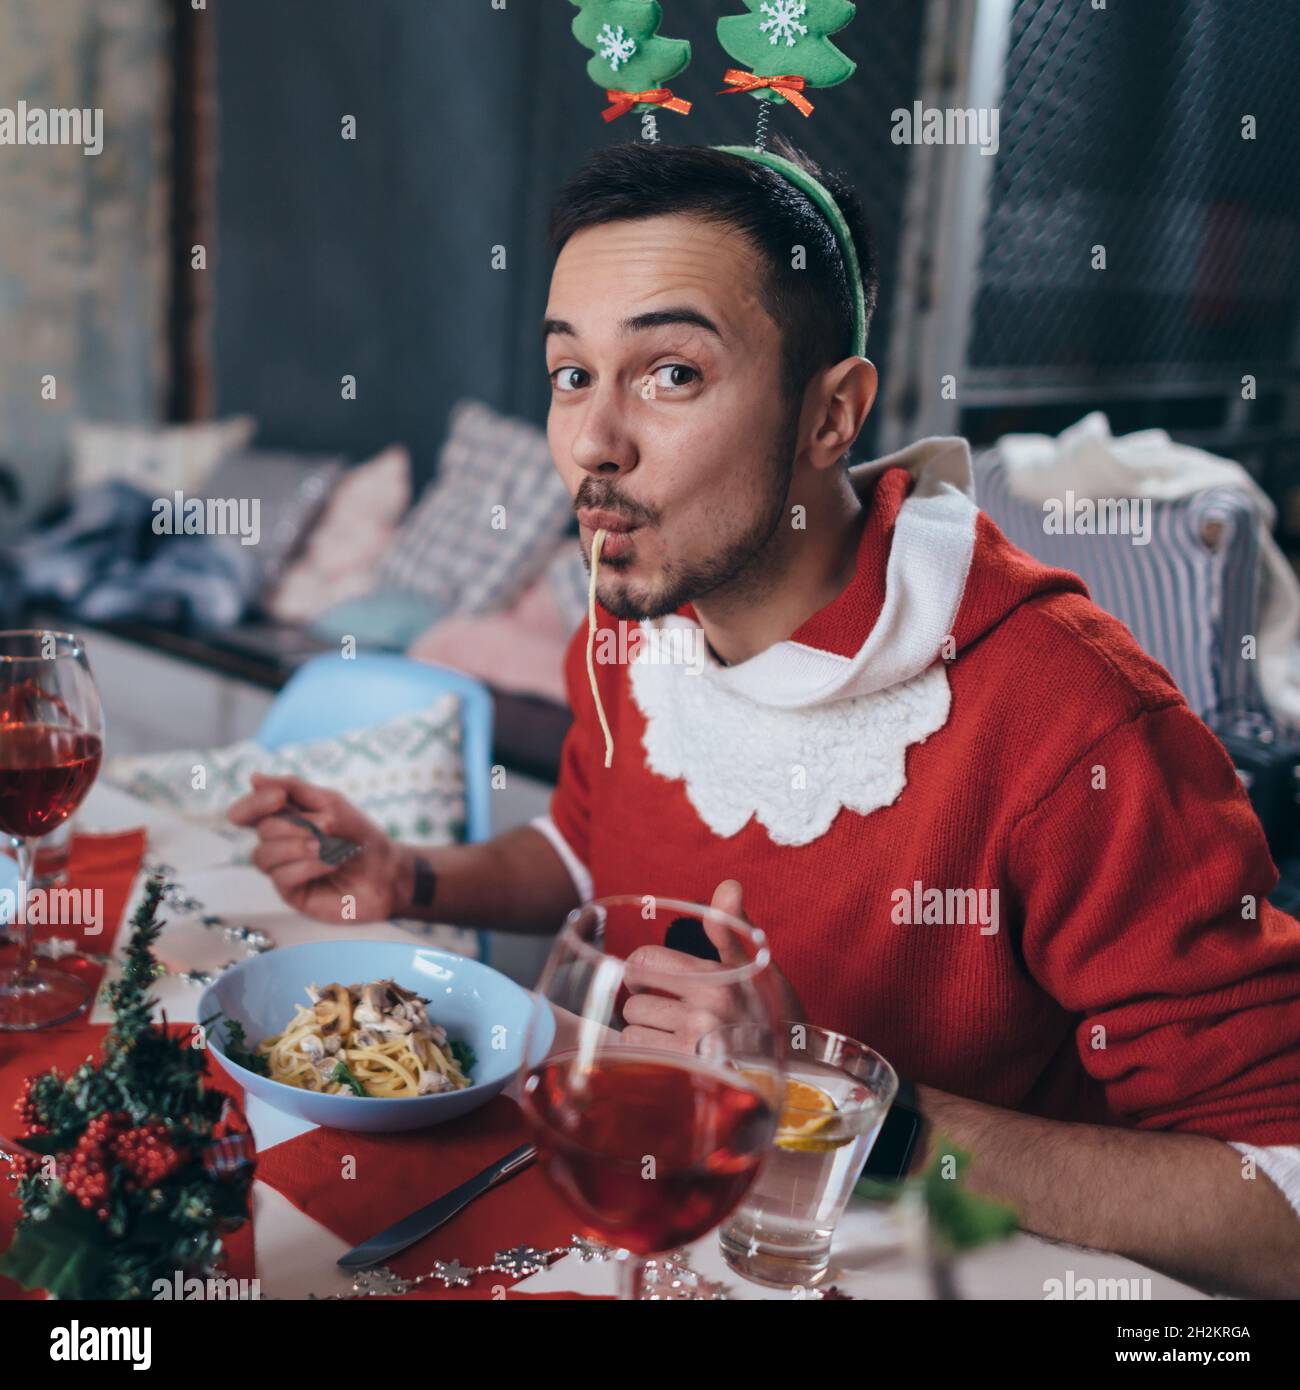 Mann im Weihnachtsmannkostüm, der Pasta, Spaghetti isst Stockfoto